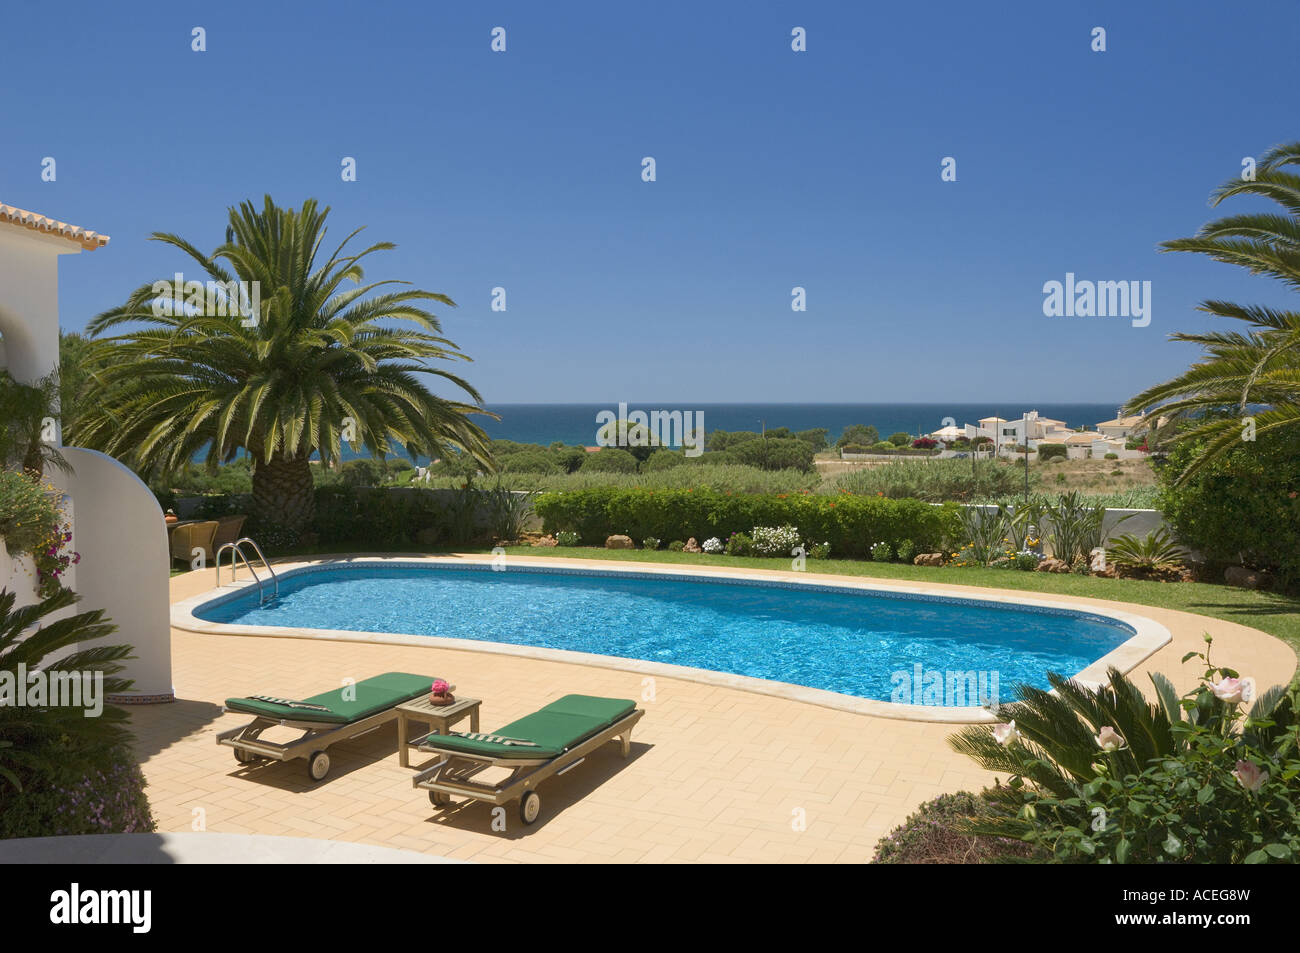 Portugal, the Algarve, villa swimming pool and view to sea, near Albufeira Stock Photo